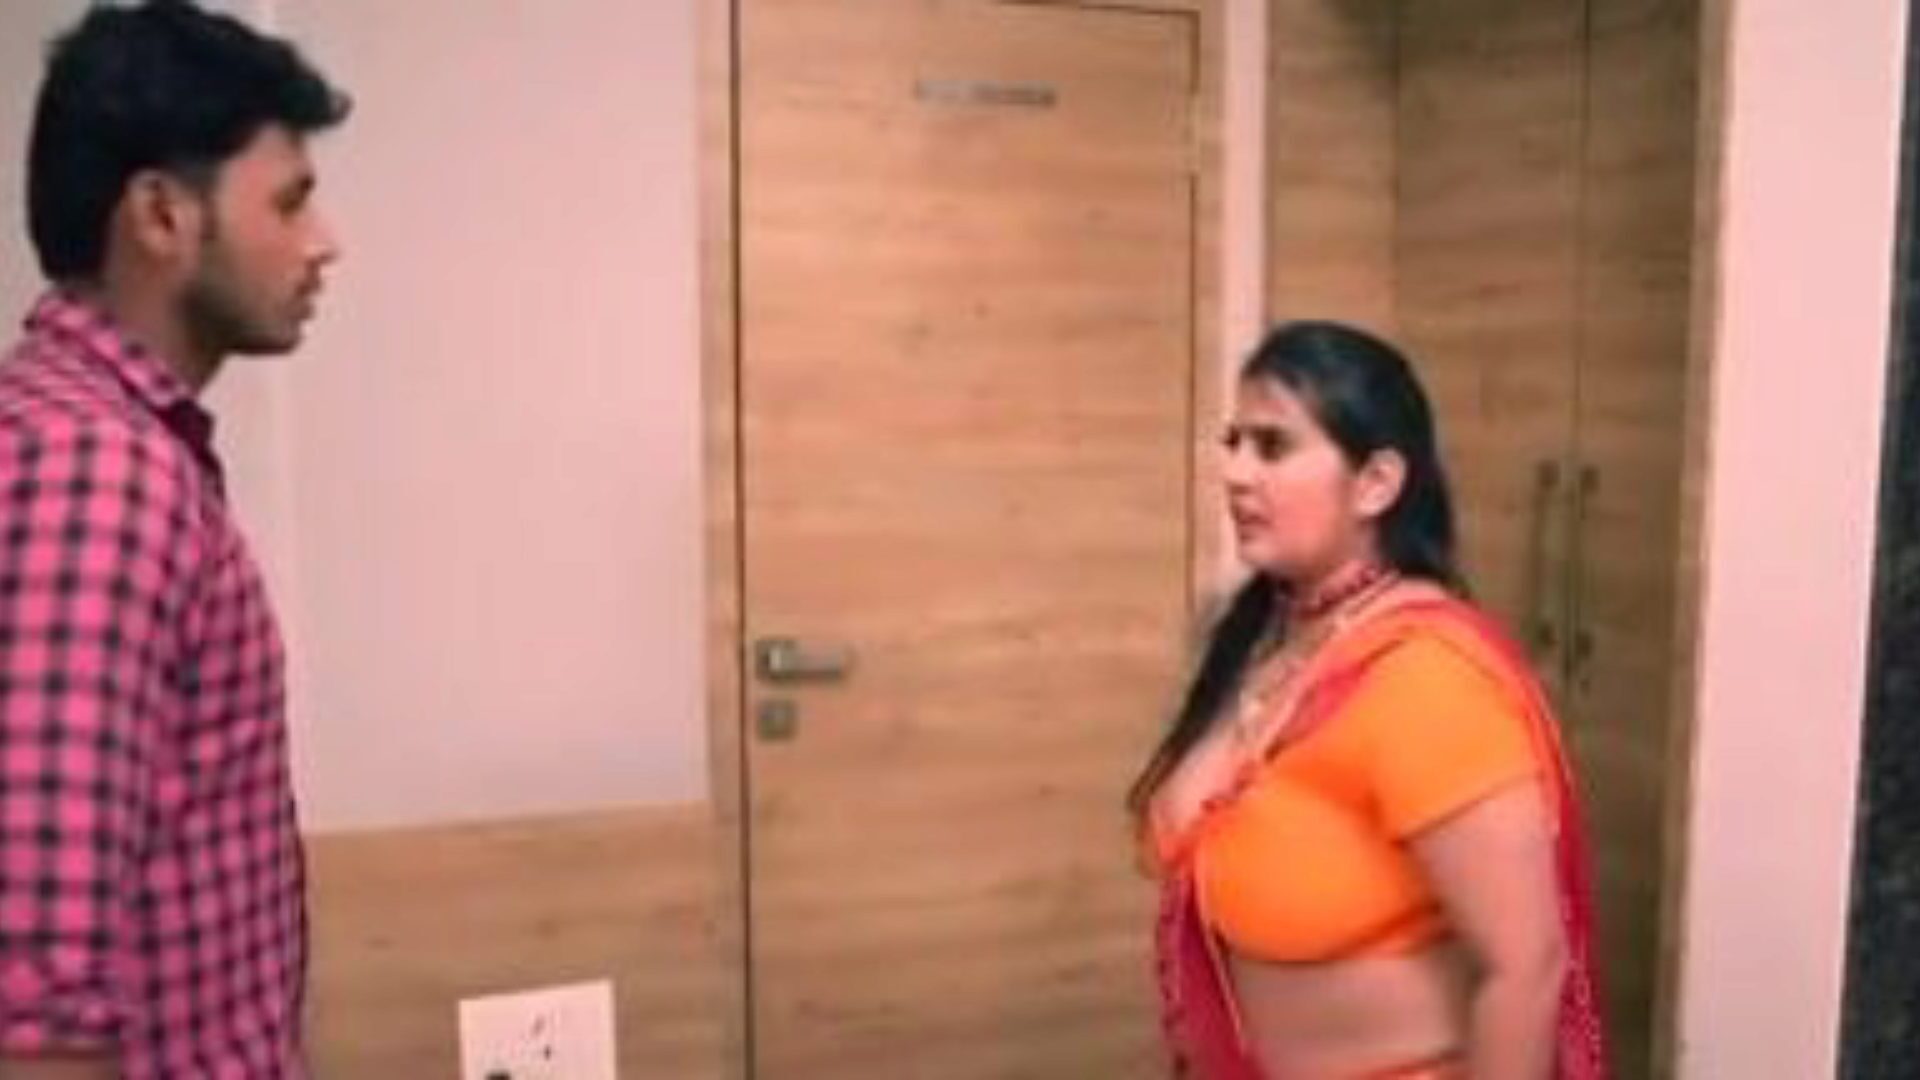 kanchan aunty ep5: free aunty xxx porn video 03 - xhamster guarda la scena del film di kanchan aunty ep5 tube lovemaking gratis su xhamster, con lo stuolo superiore di bangladeshi aunty xxx e aunty mobile porno vignette